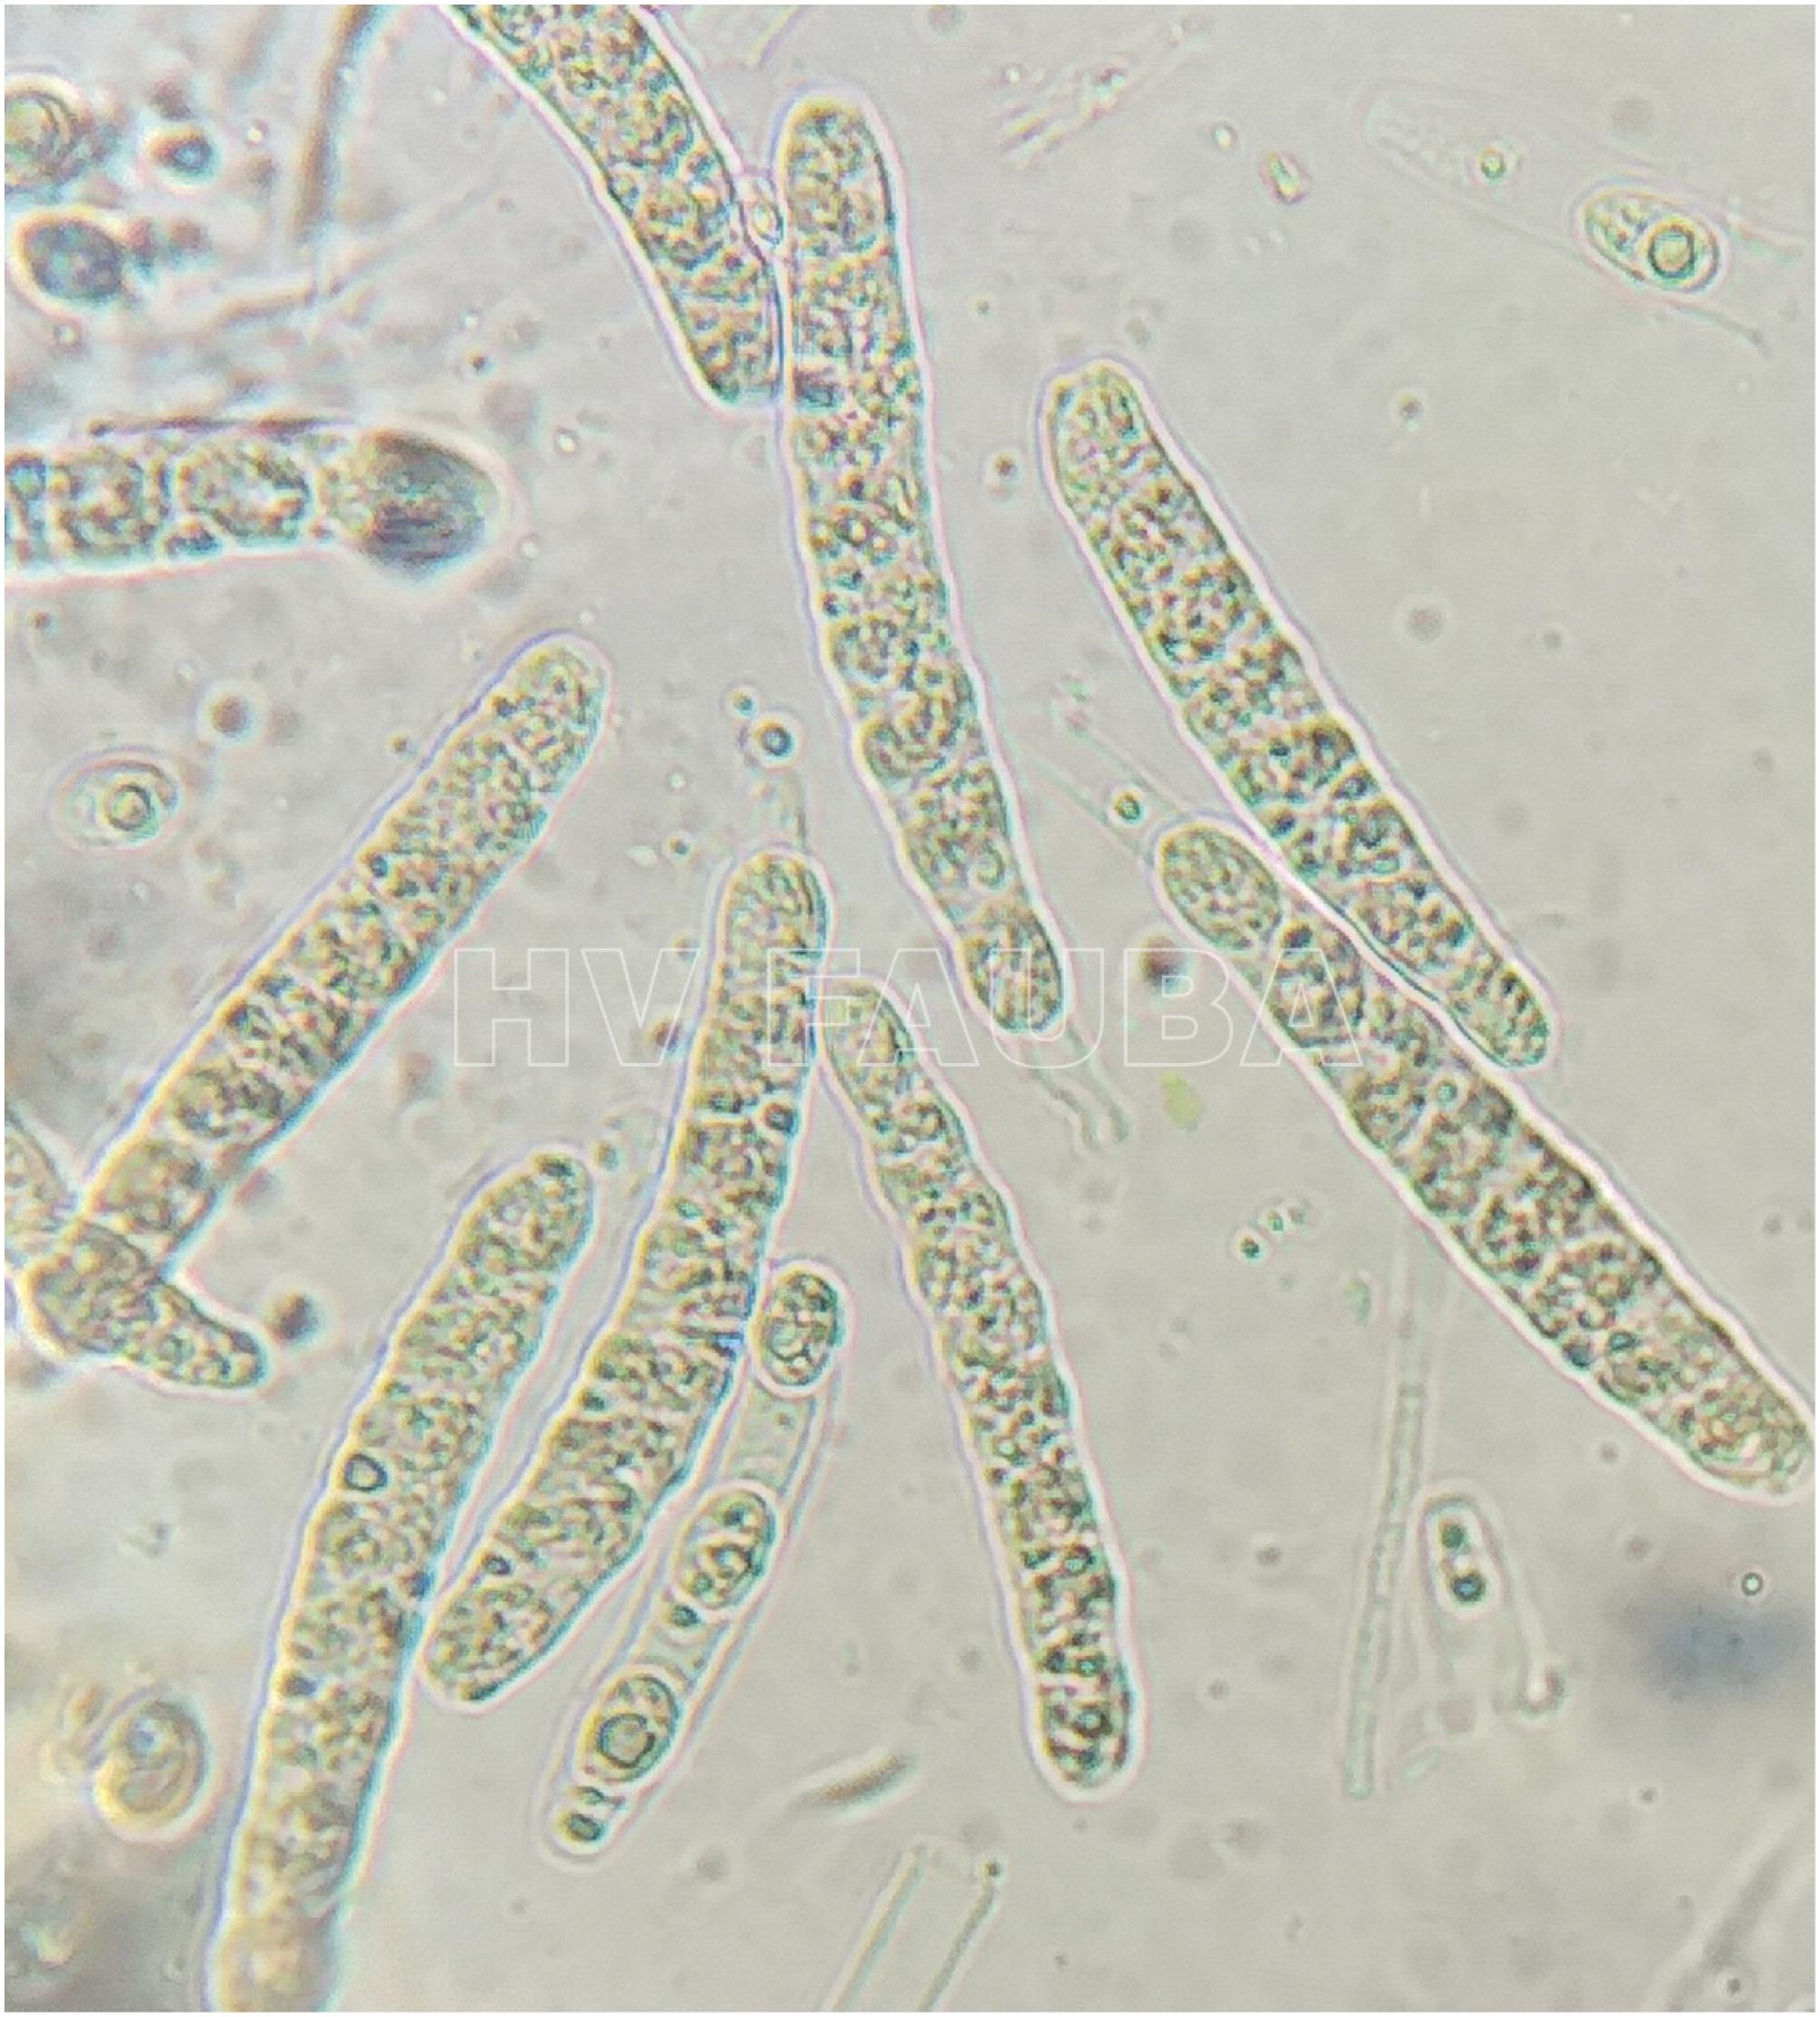 Esporas sexuales de Phyllachora maydis (ascosporas). Autor: Valle-Torres et al., 2020.